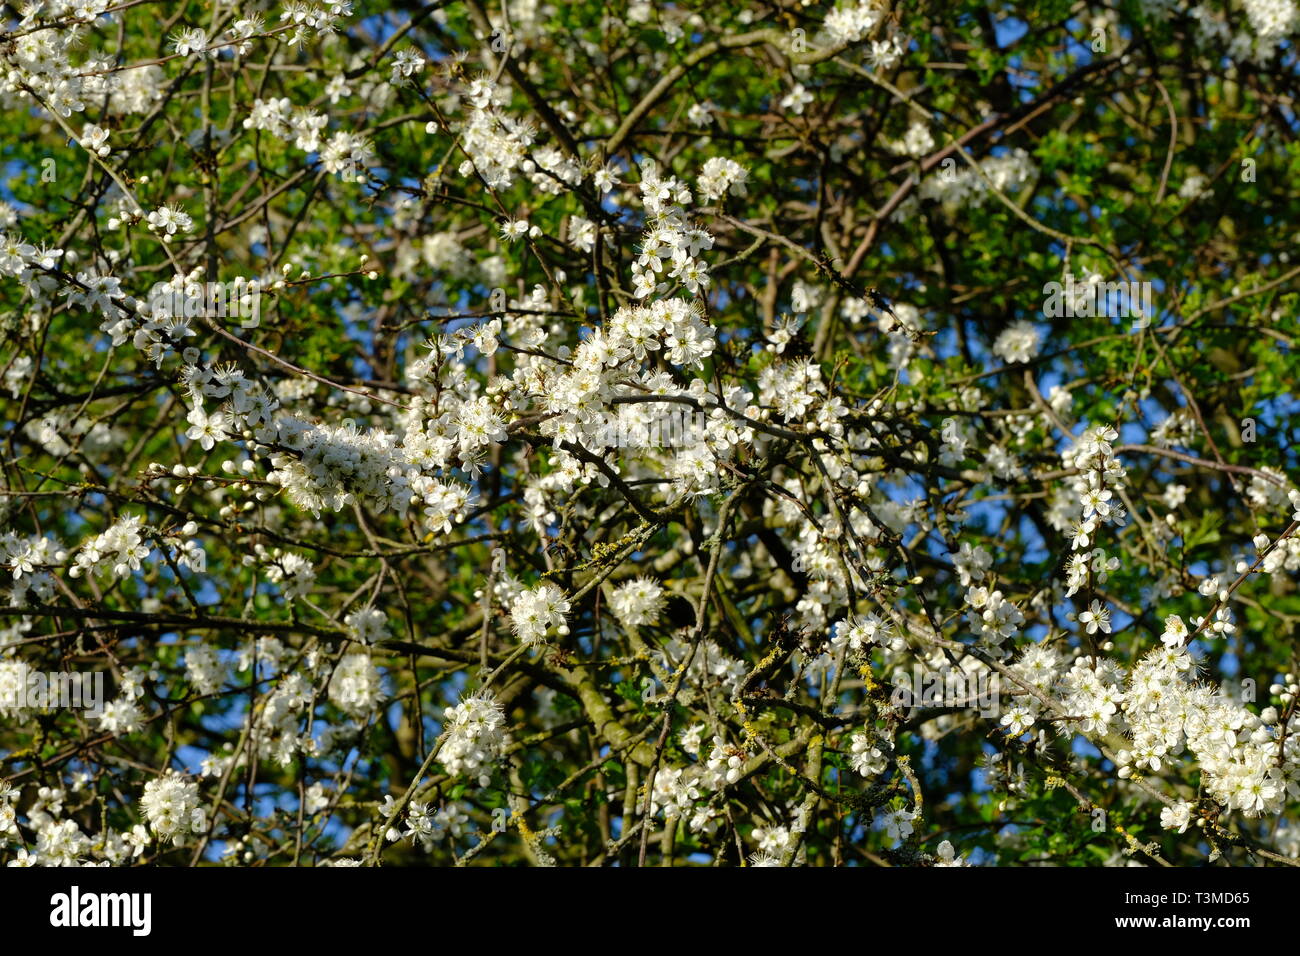 Cheshire, England, Blackthorn Blossom, Sloe Gin, Sloe, Hedging Plant, Prunus Spinosa, Laub, Heckenreihen, Frühling, Sträucher, Bäume, Natürlich, Weiß. Stockfoto